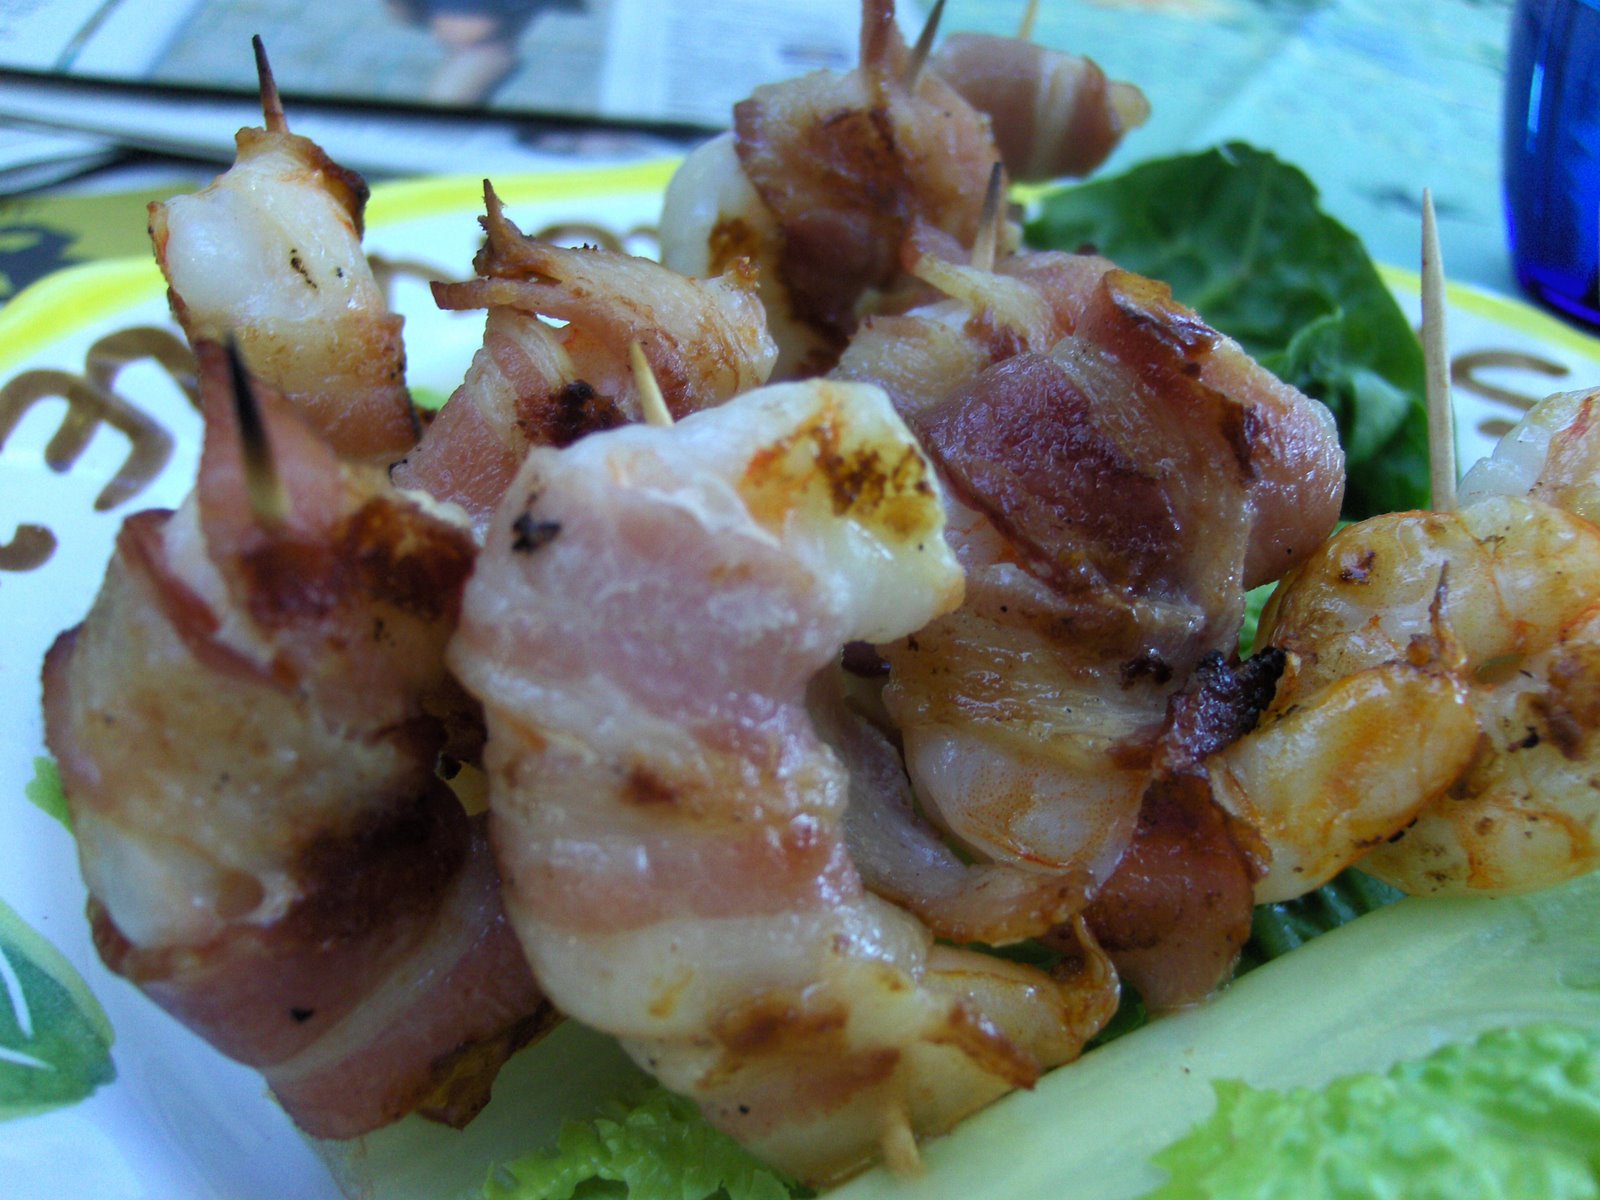 [Frank,+Michael+bacon+wrapped+shrimp+on+lettuce+#2.JPG]